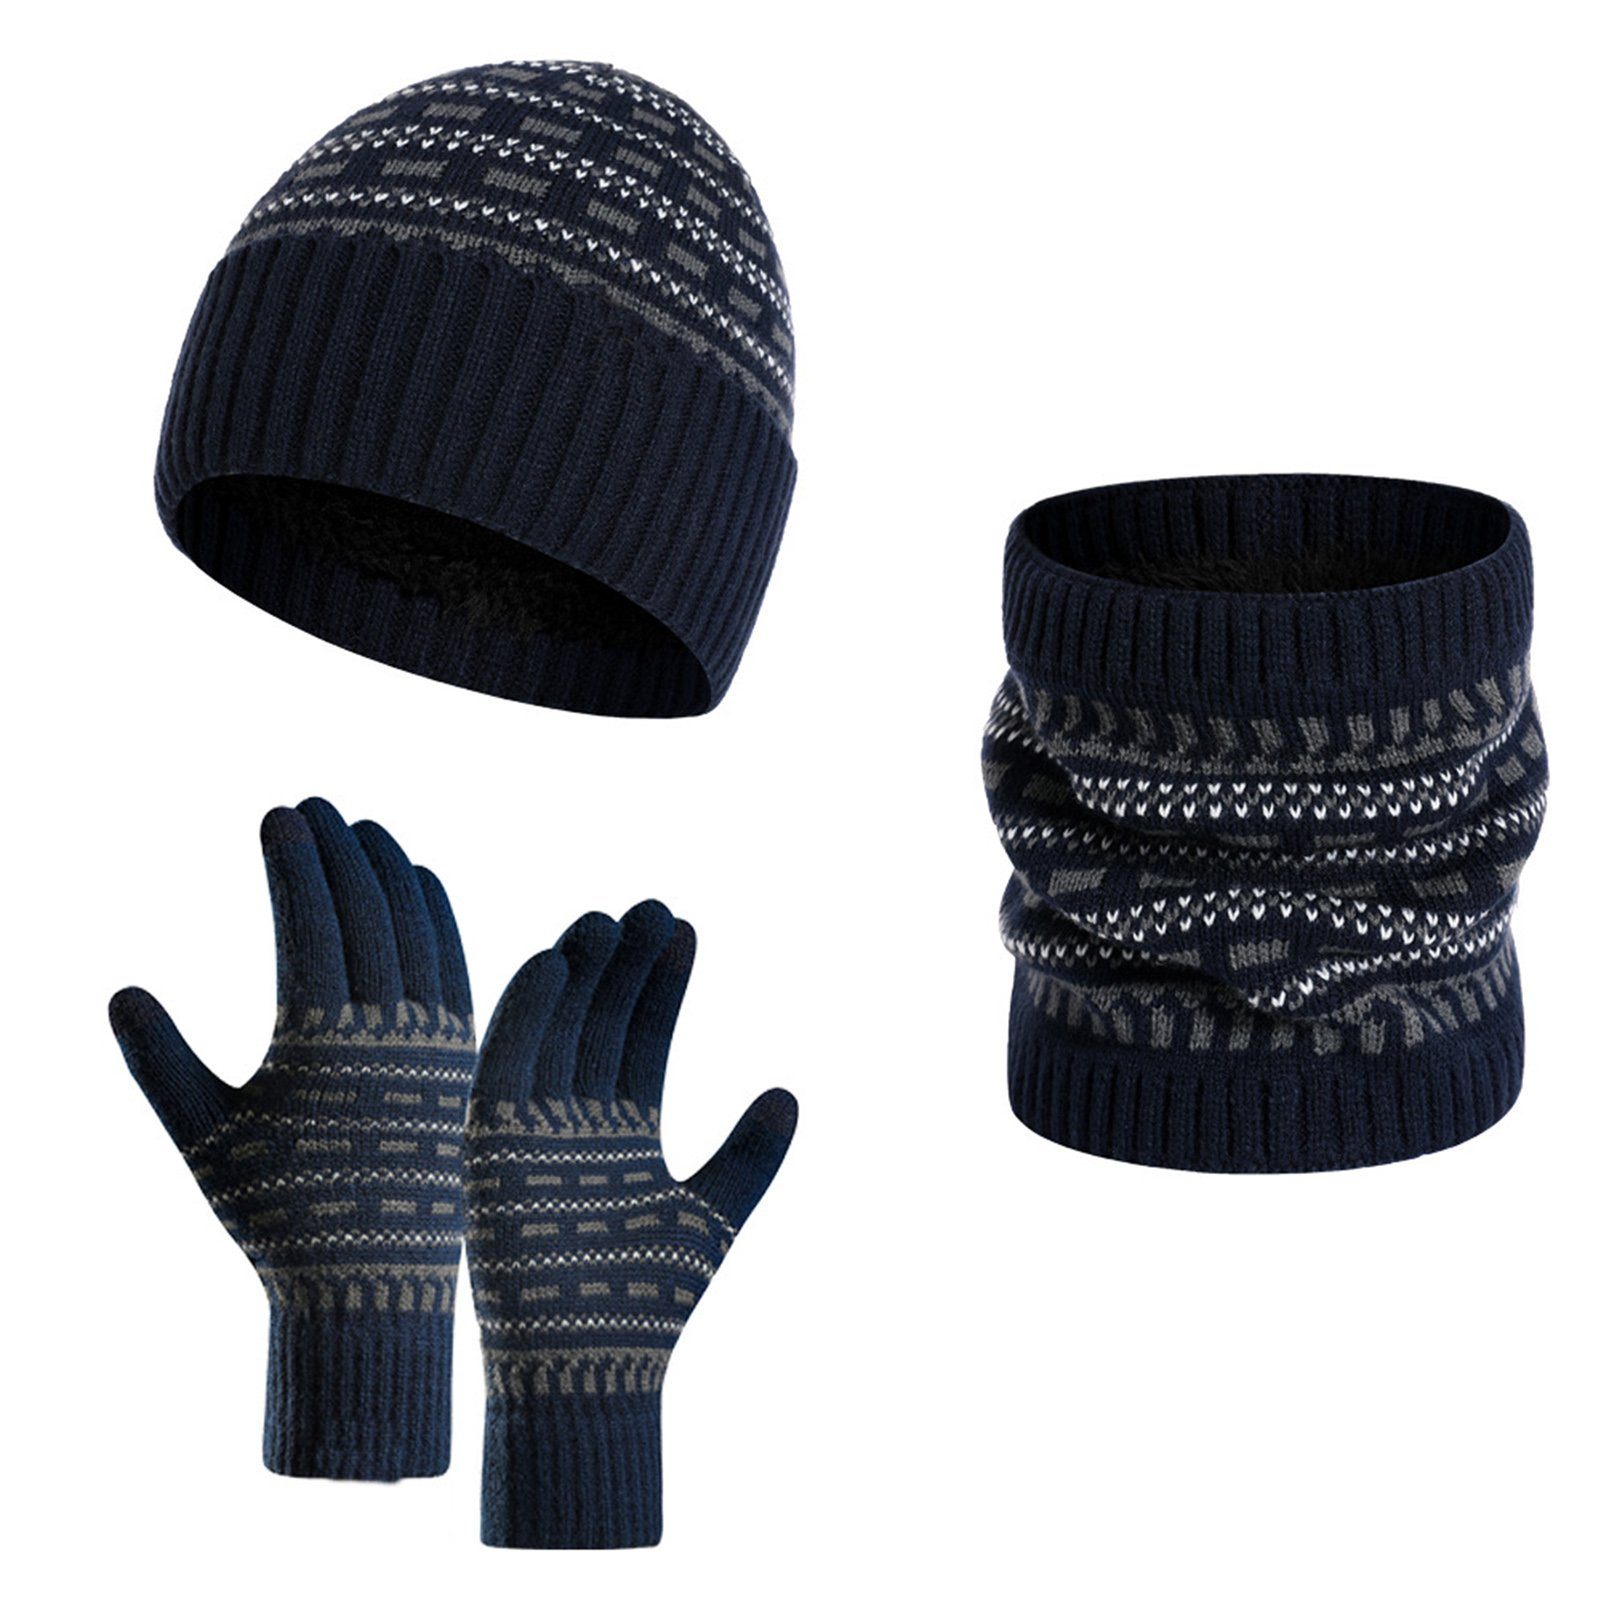 Rutaqian Mütze & Schal 3-teiliges Set Winter-Mütze, Schal, Touchscreen-Handschuhe (Handschuhe, Mütze, Halswärmer für Männer und Frauen, Warme Beanie Mütze Winter Set mit Fleecefutter) Navy blau